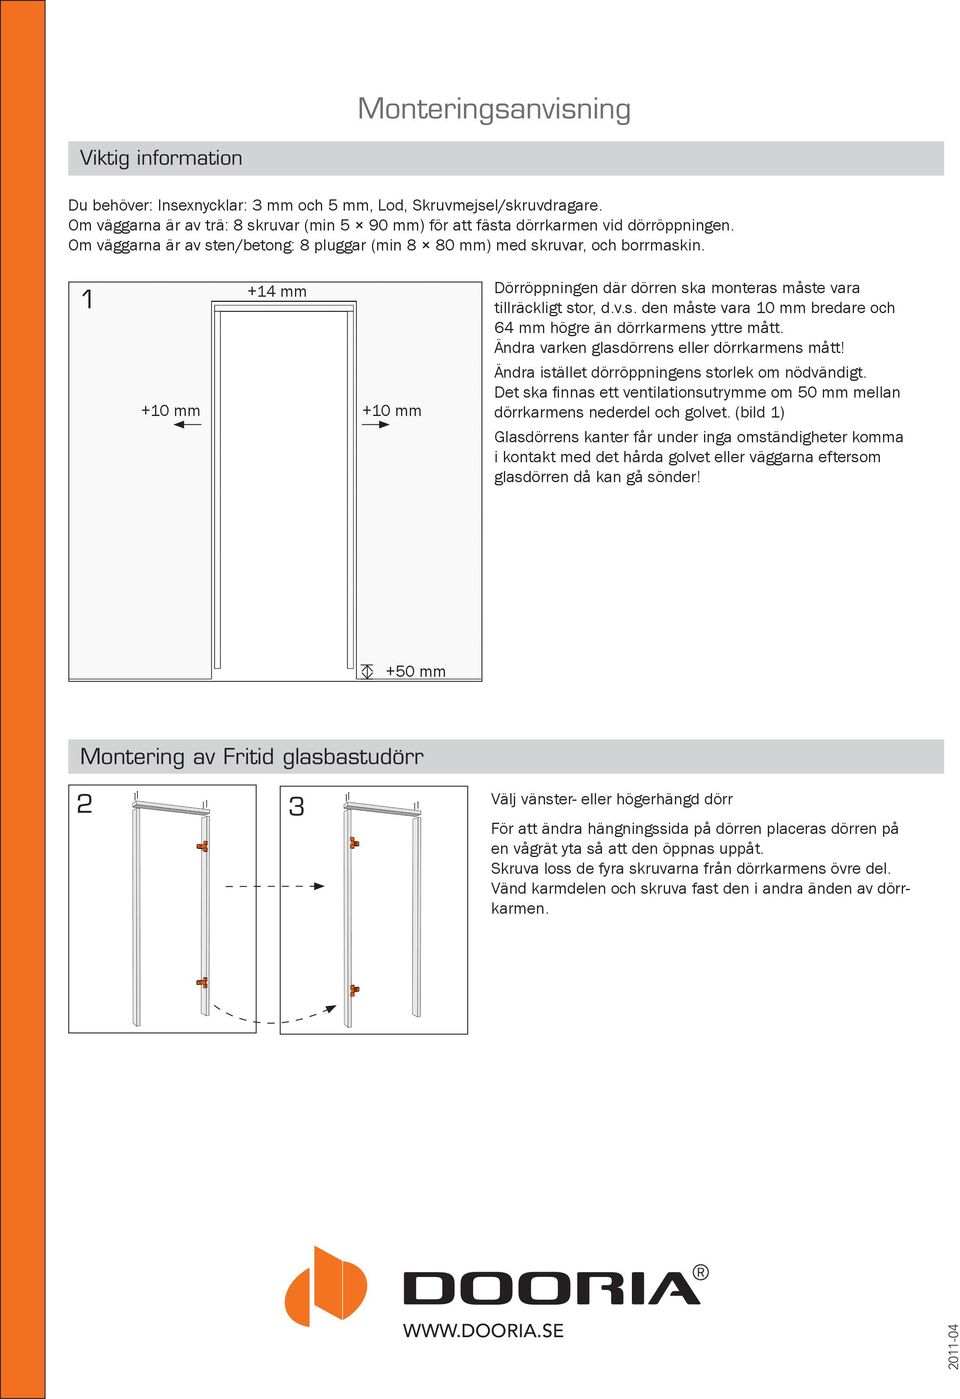 1 +10 mm +14 mm +10 mm Dörröppningen där dörren ska monteras måste vara tillräckligt stor, d.v.s. den måste vara 10 mm bredare och 64 mm högre än dörrkarmens yttre mått.